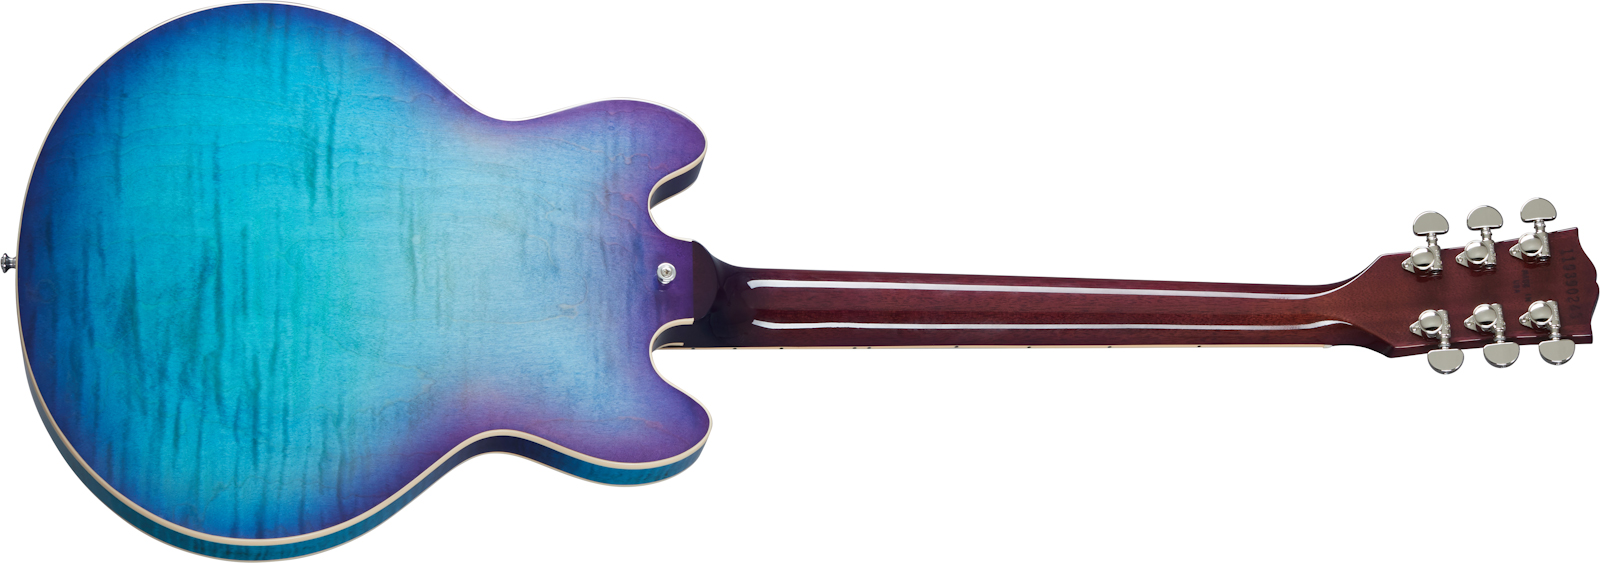 Gibson Es-339 Figured Modern 2020 2h Ht Rw - Blueberry Burst - Semi hollow elektriche gitaar - Variation 1